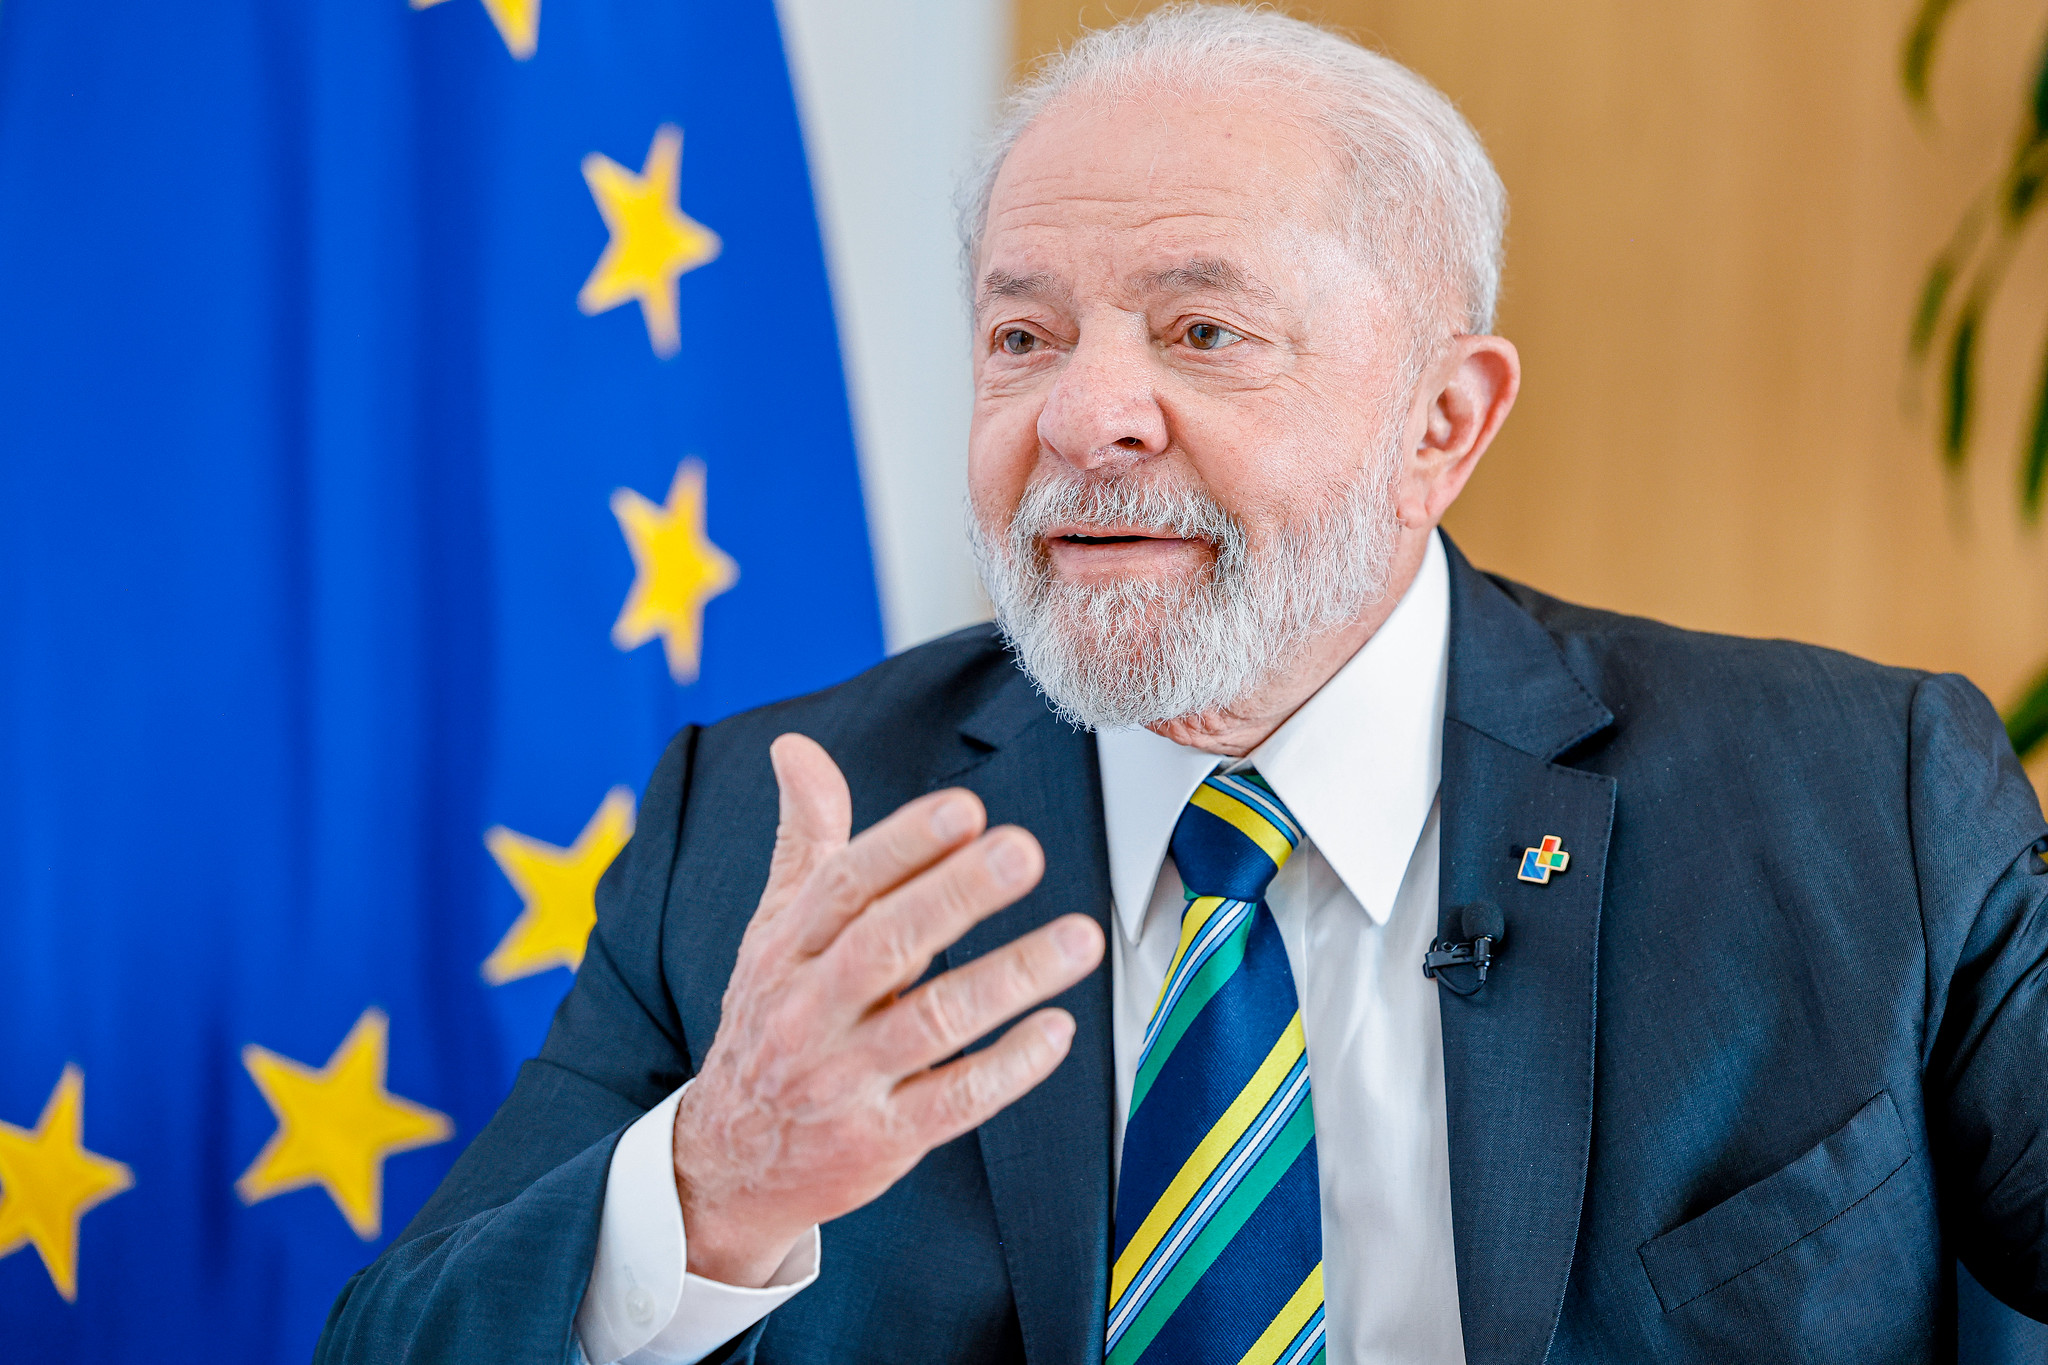 Transição energética será independência verdadeira do Brasil, diz Lula. Na imagem: Presidente Lula (PT) durante programa "Conversa com o Presidente", durante a 3ª Cúpula Celac-UE, em Bruxelas, na Bélgica, em 18/7/23 (Foto: Ricardo Stuckert/PR)